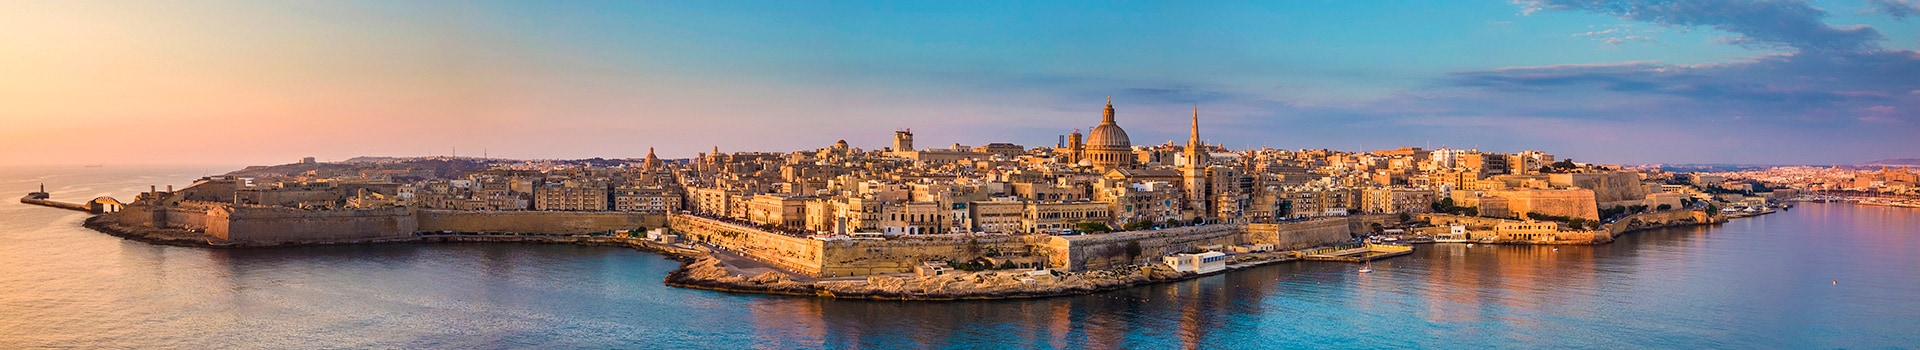 Lamezia - Malta